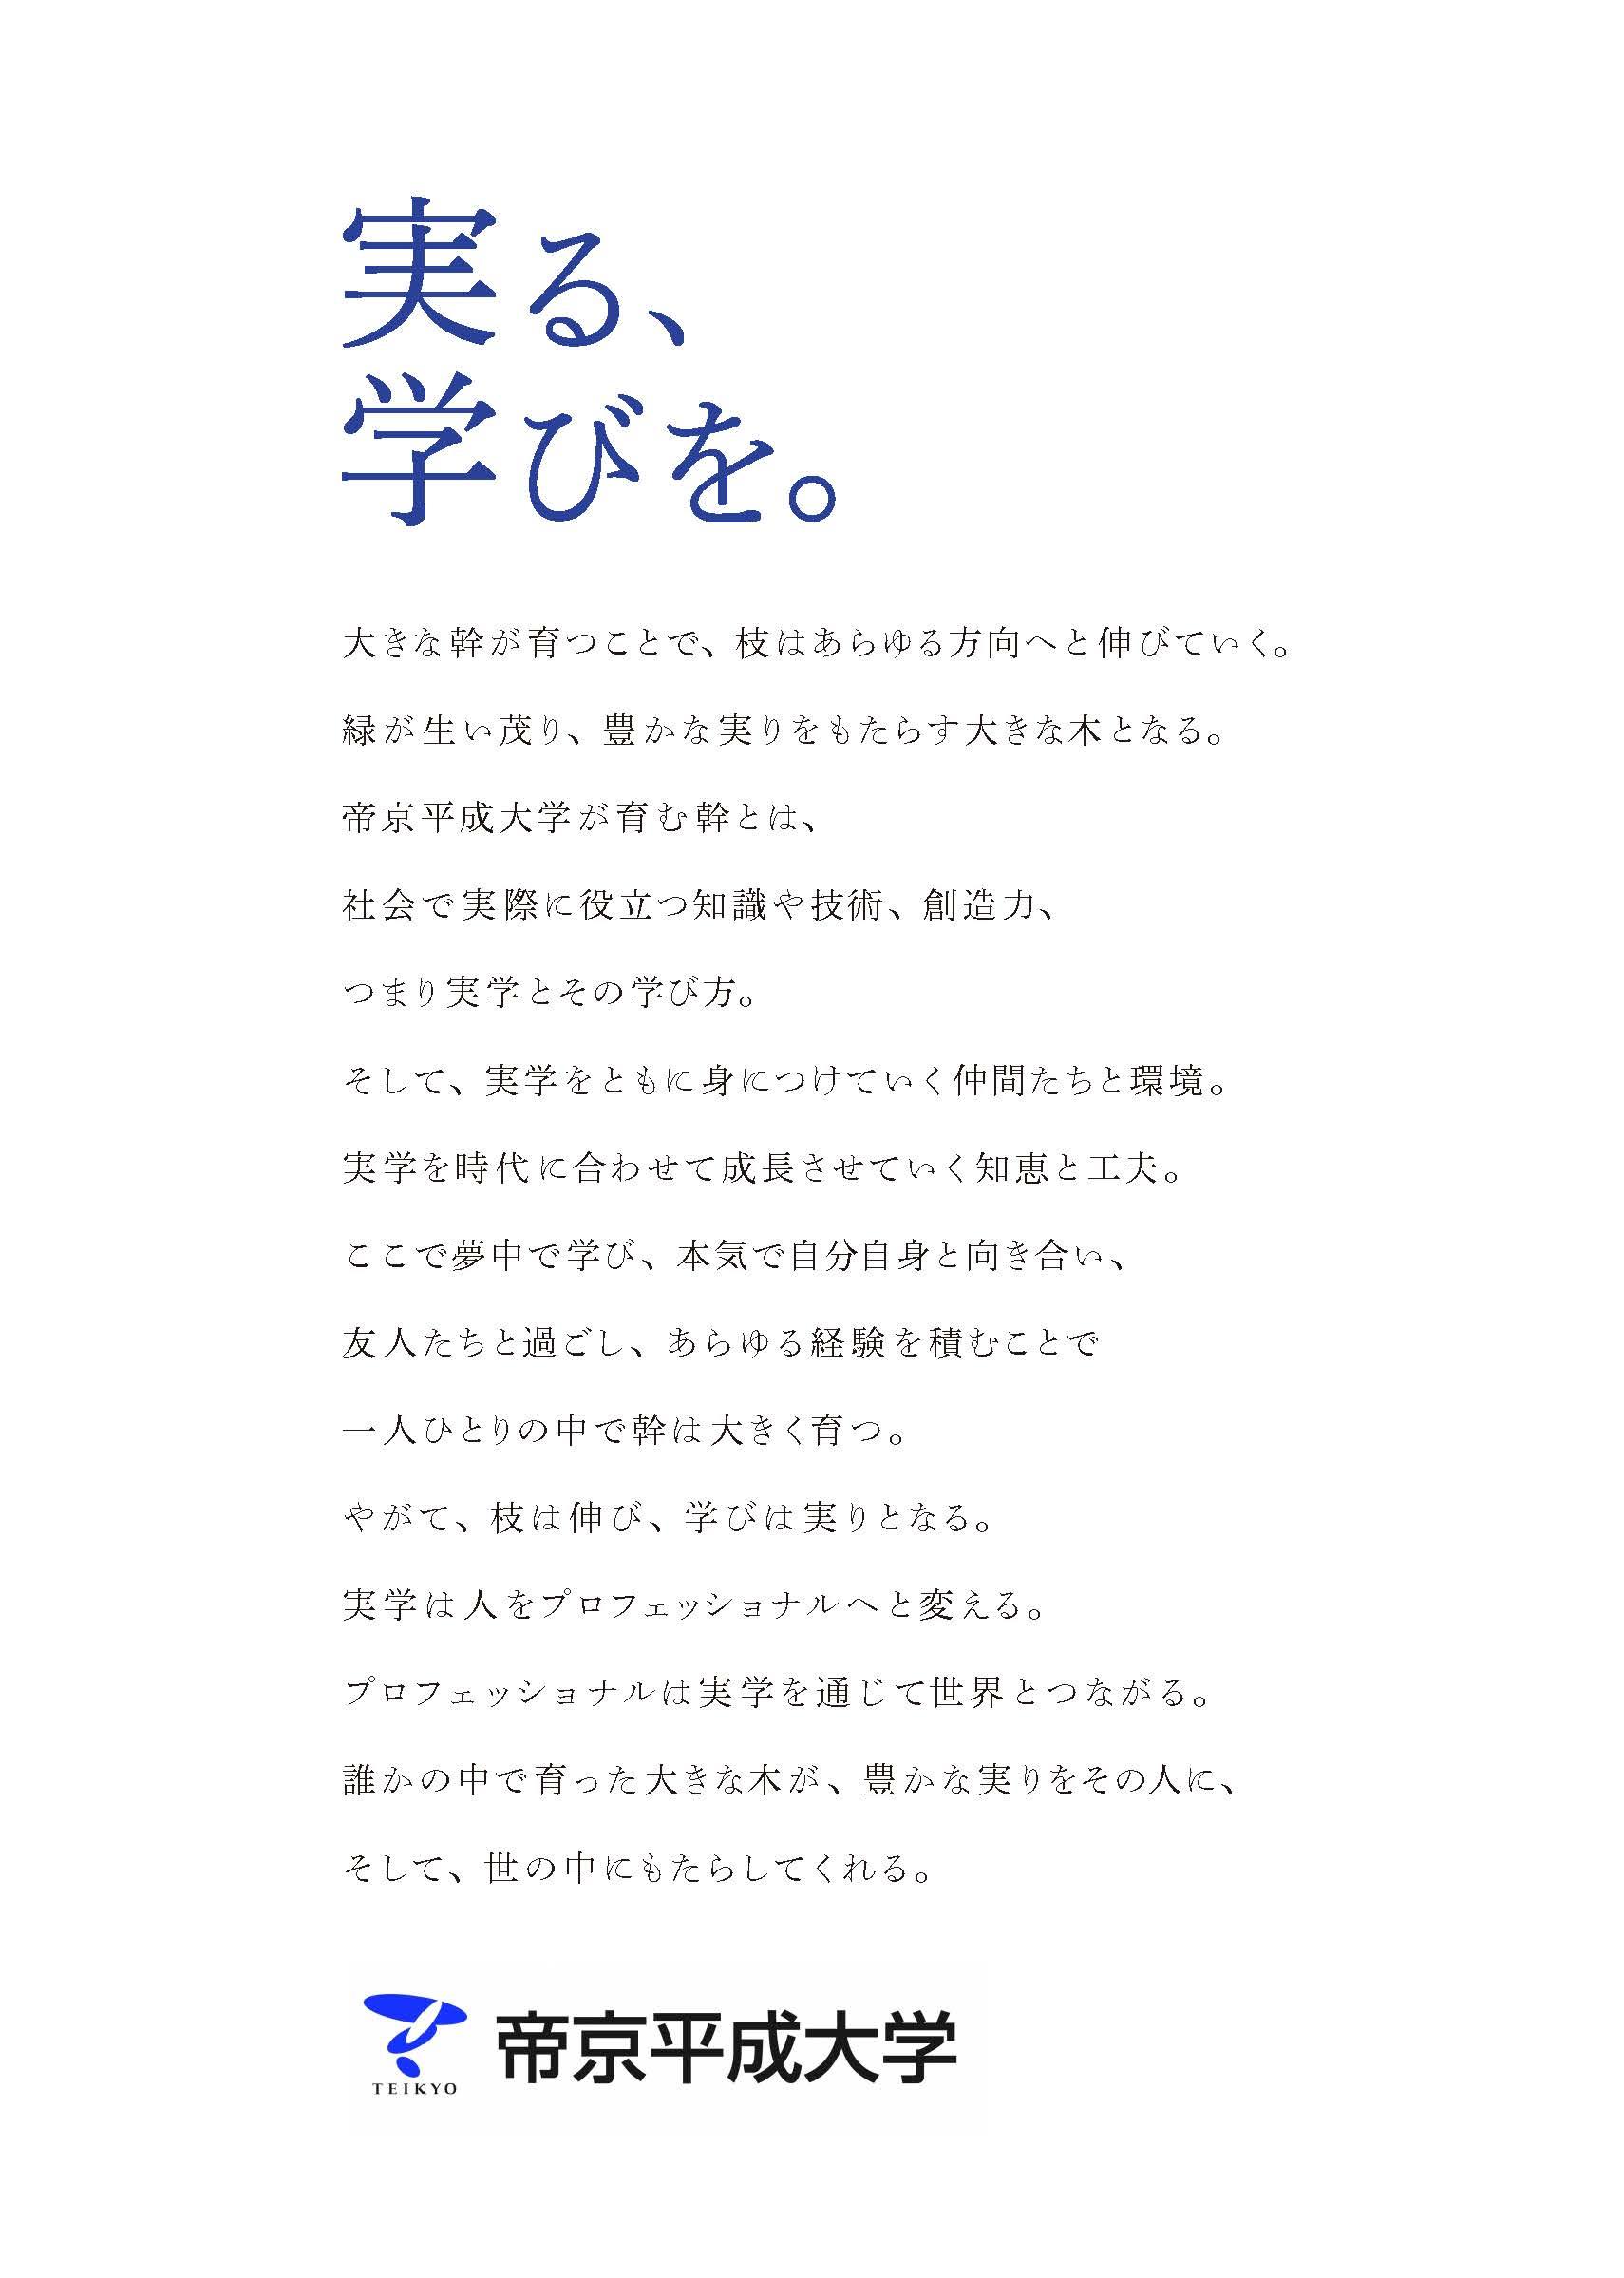 帝京平成大学が新キャッチコピー「実る、学びを。」を発表